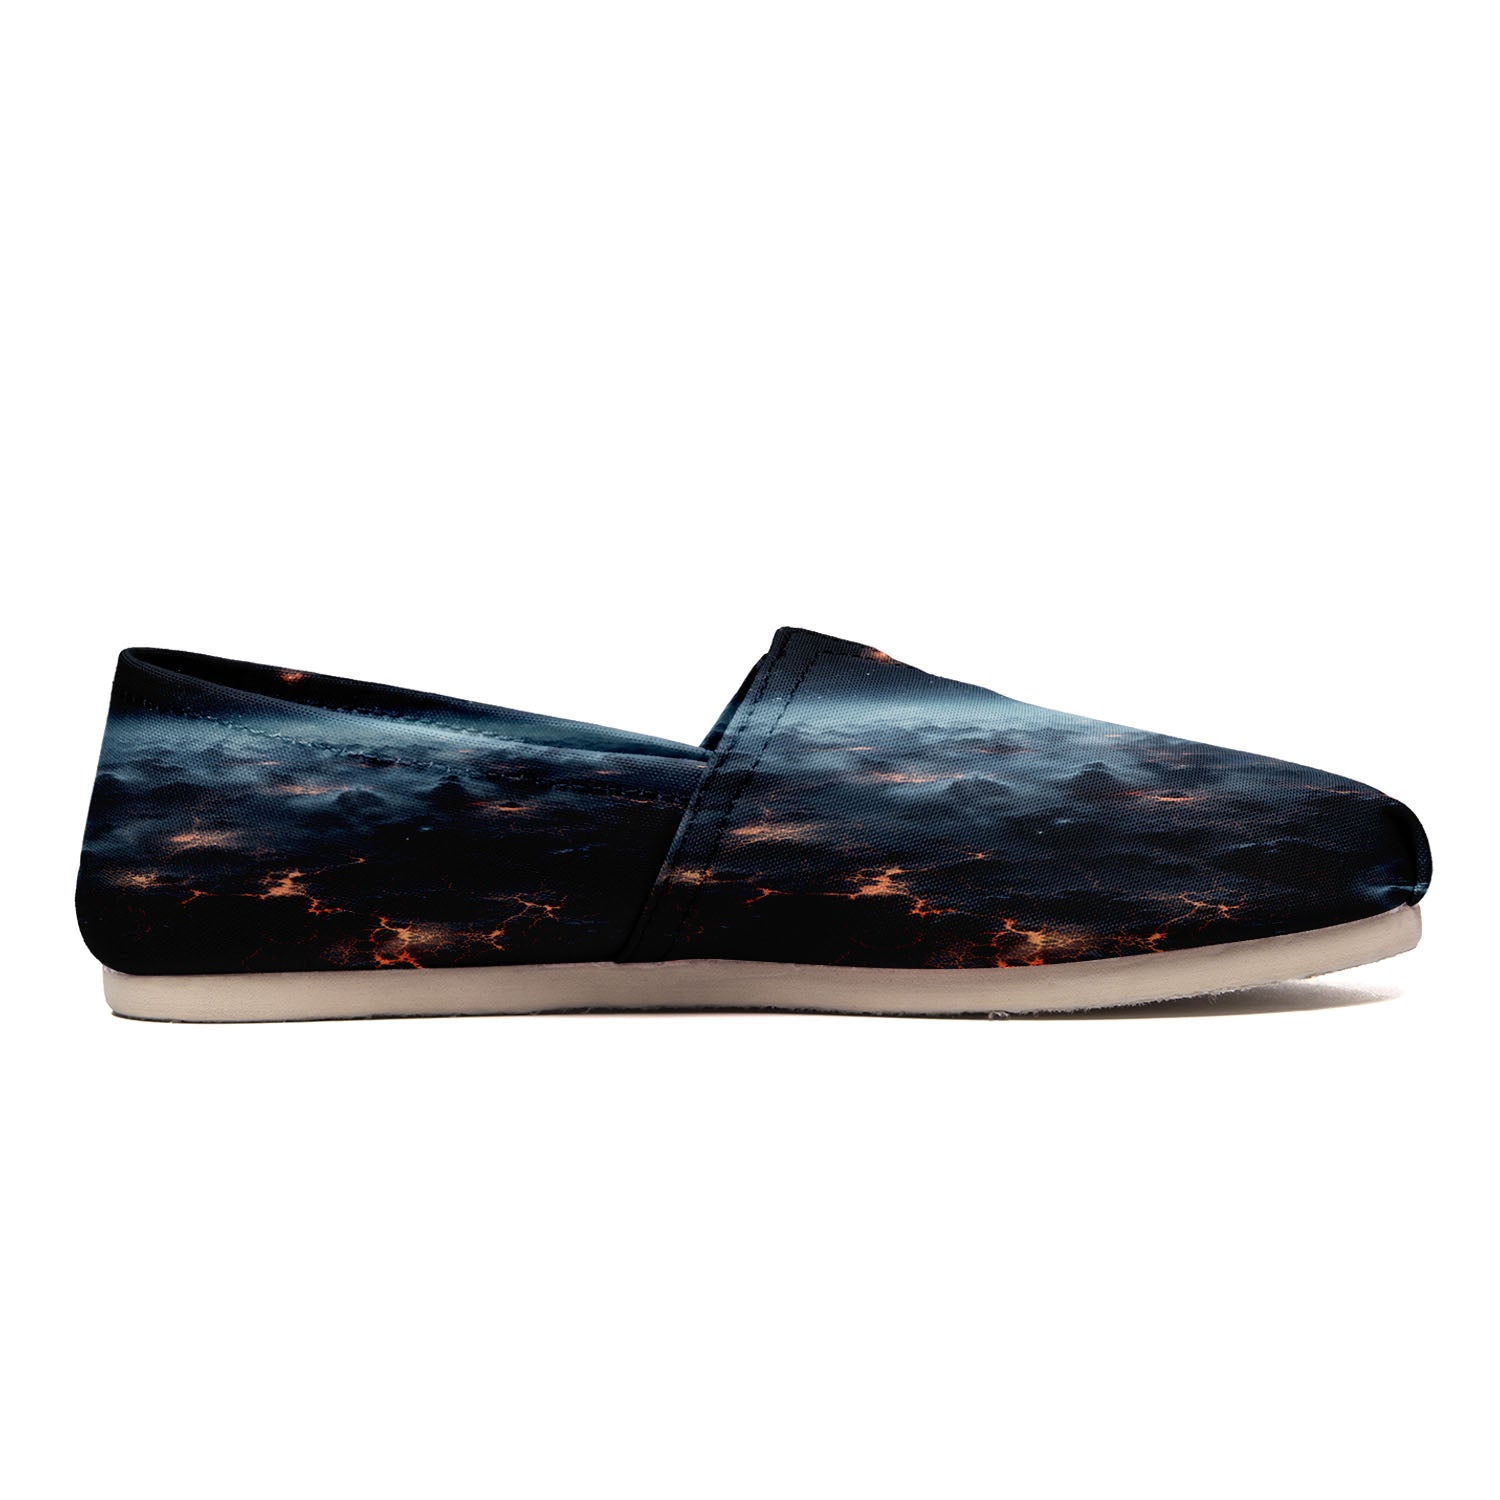 Leinwand-Schuhe mit Himmelskarten und kosmischer grün-lila Mischung, EVA-Sohle für Männer und Frauen